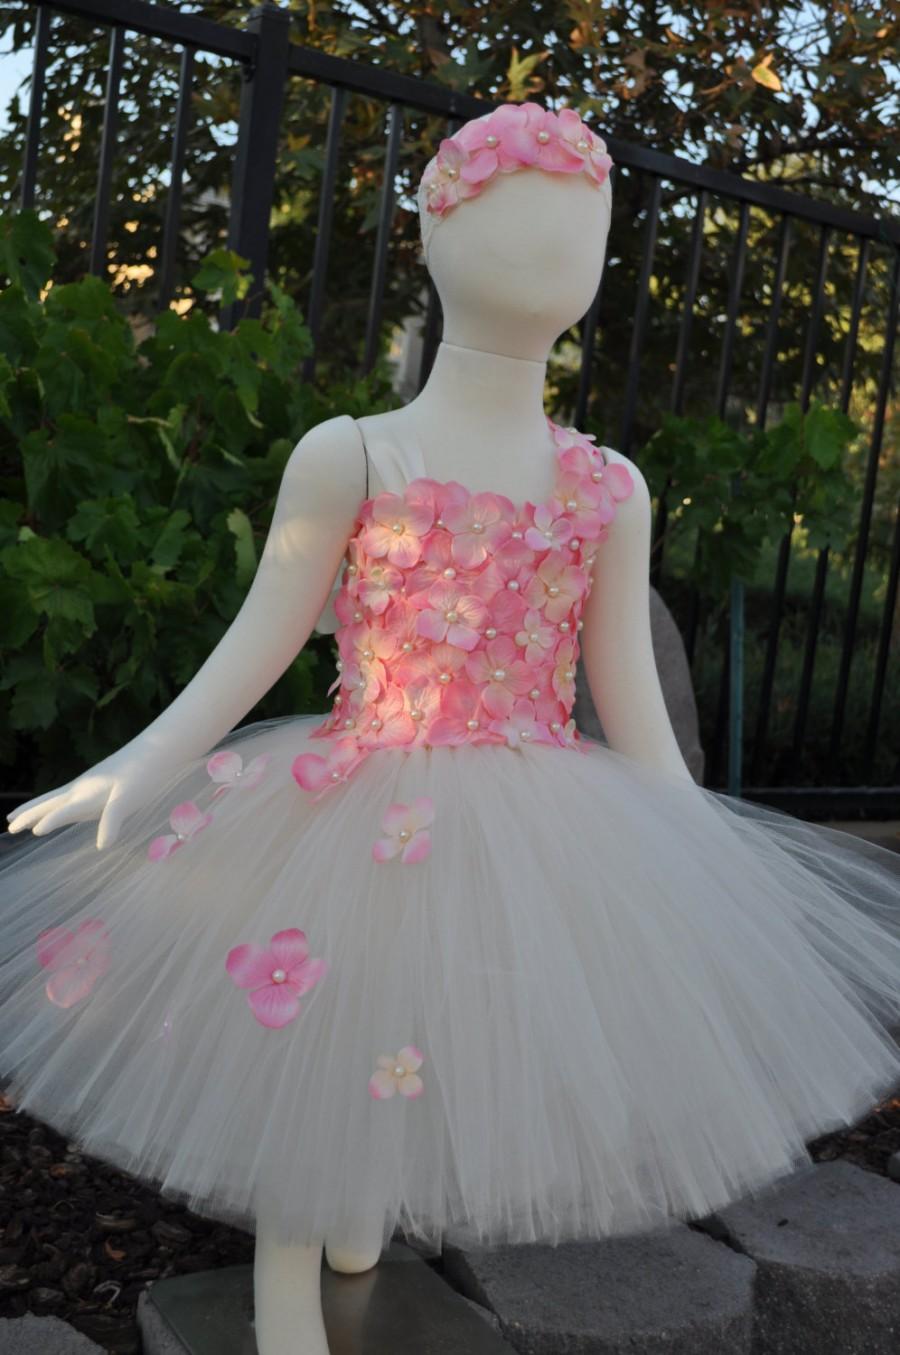 زفاف - Special Occasion Dress, Flower Girl Dress, Tutu Dress, Girls Dress, Baby Dress, Toddler Dress, Wedding Tutu, Blush Dress, Pink Dress